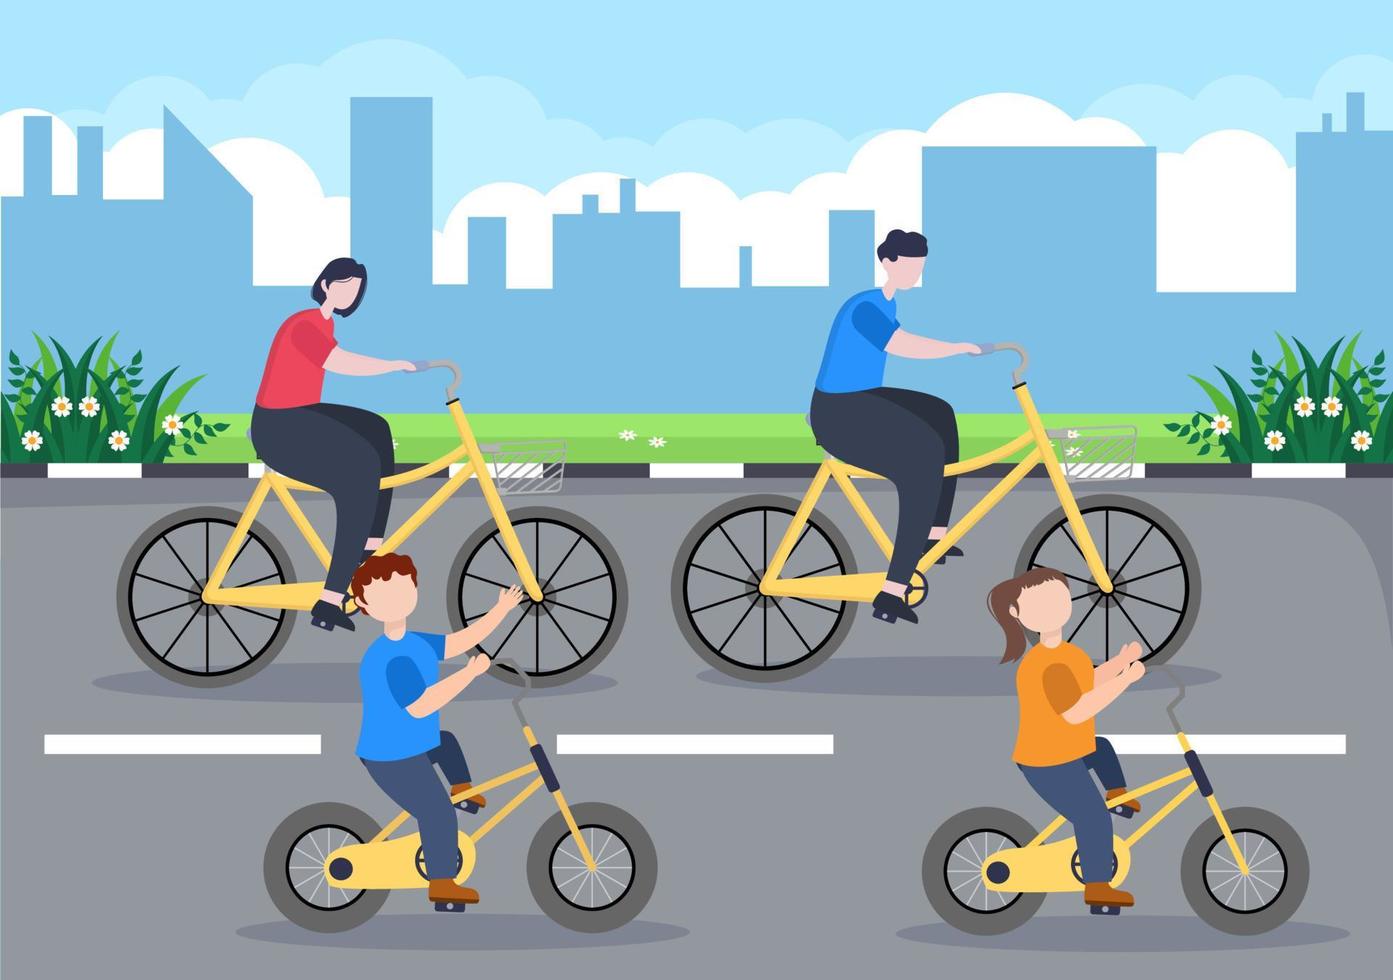 Ilustración plana de vector de bicicleta. Las personas que andan en bicicleta, practican deportes y realizan actividades recreativas al aire libre en la carretera del parque o en la autopista llevan un estilo de vida saludable.